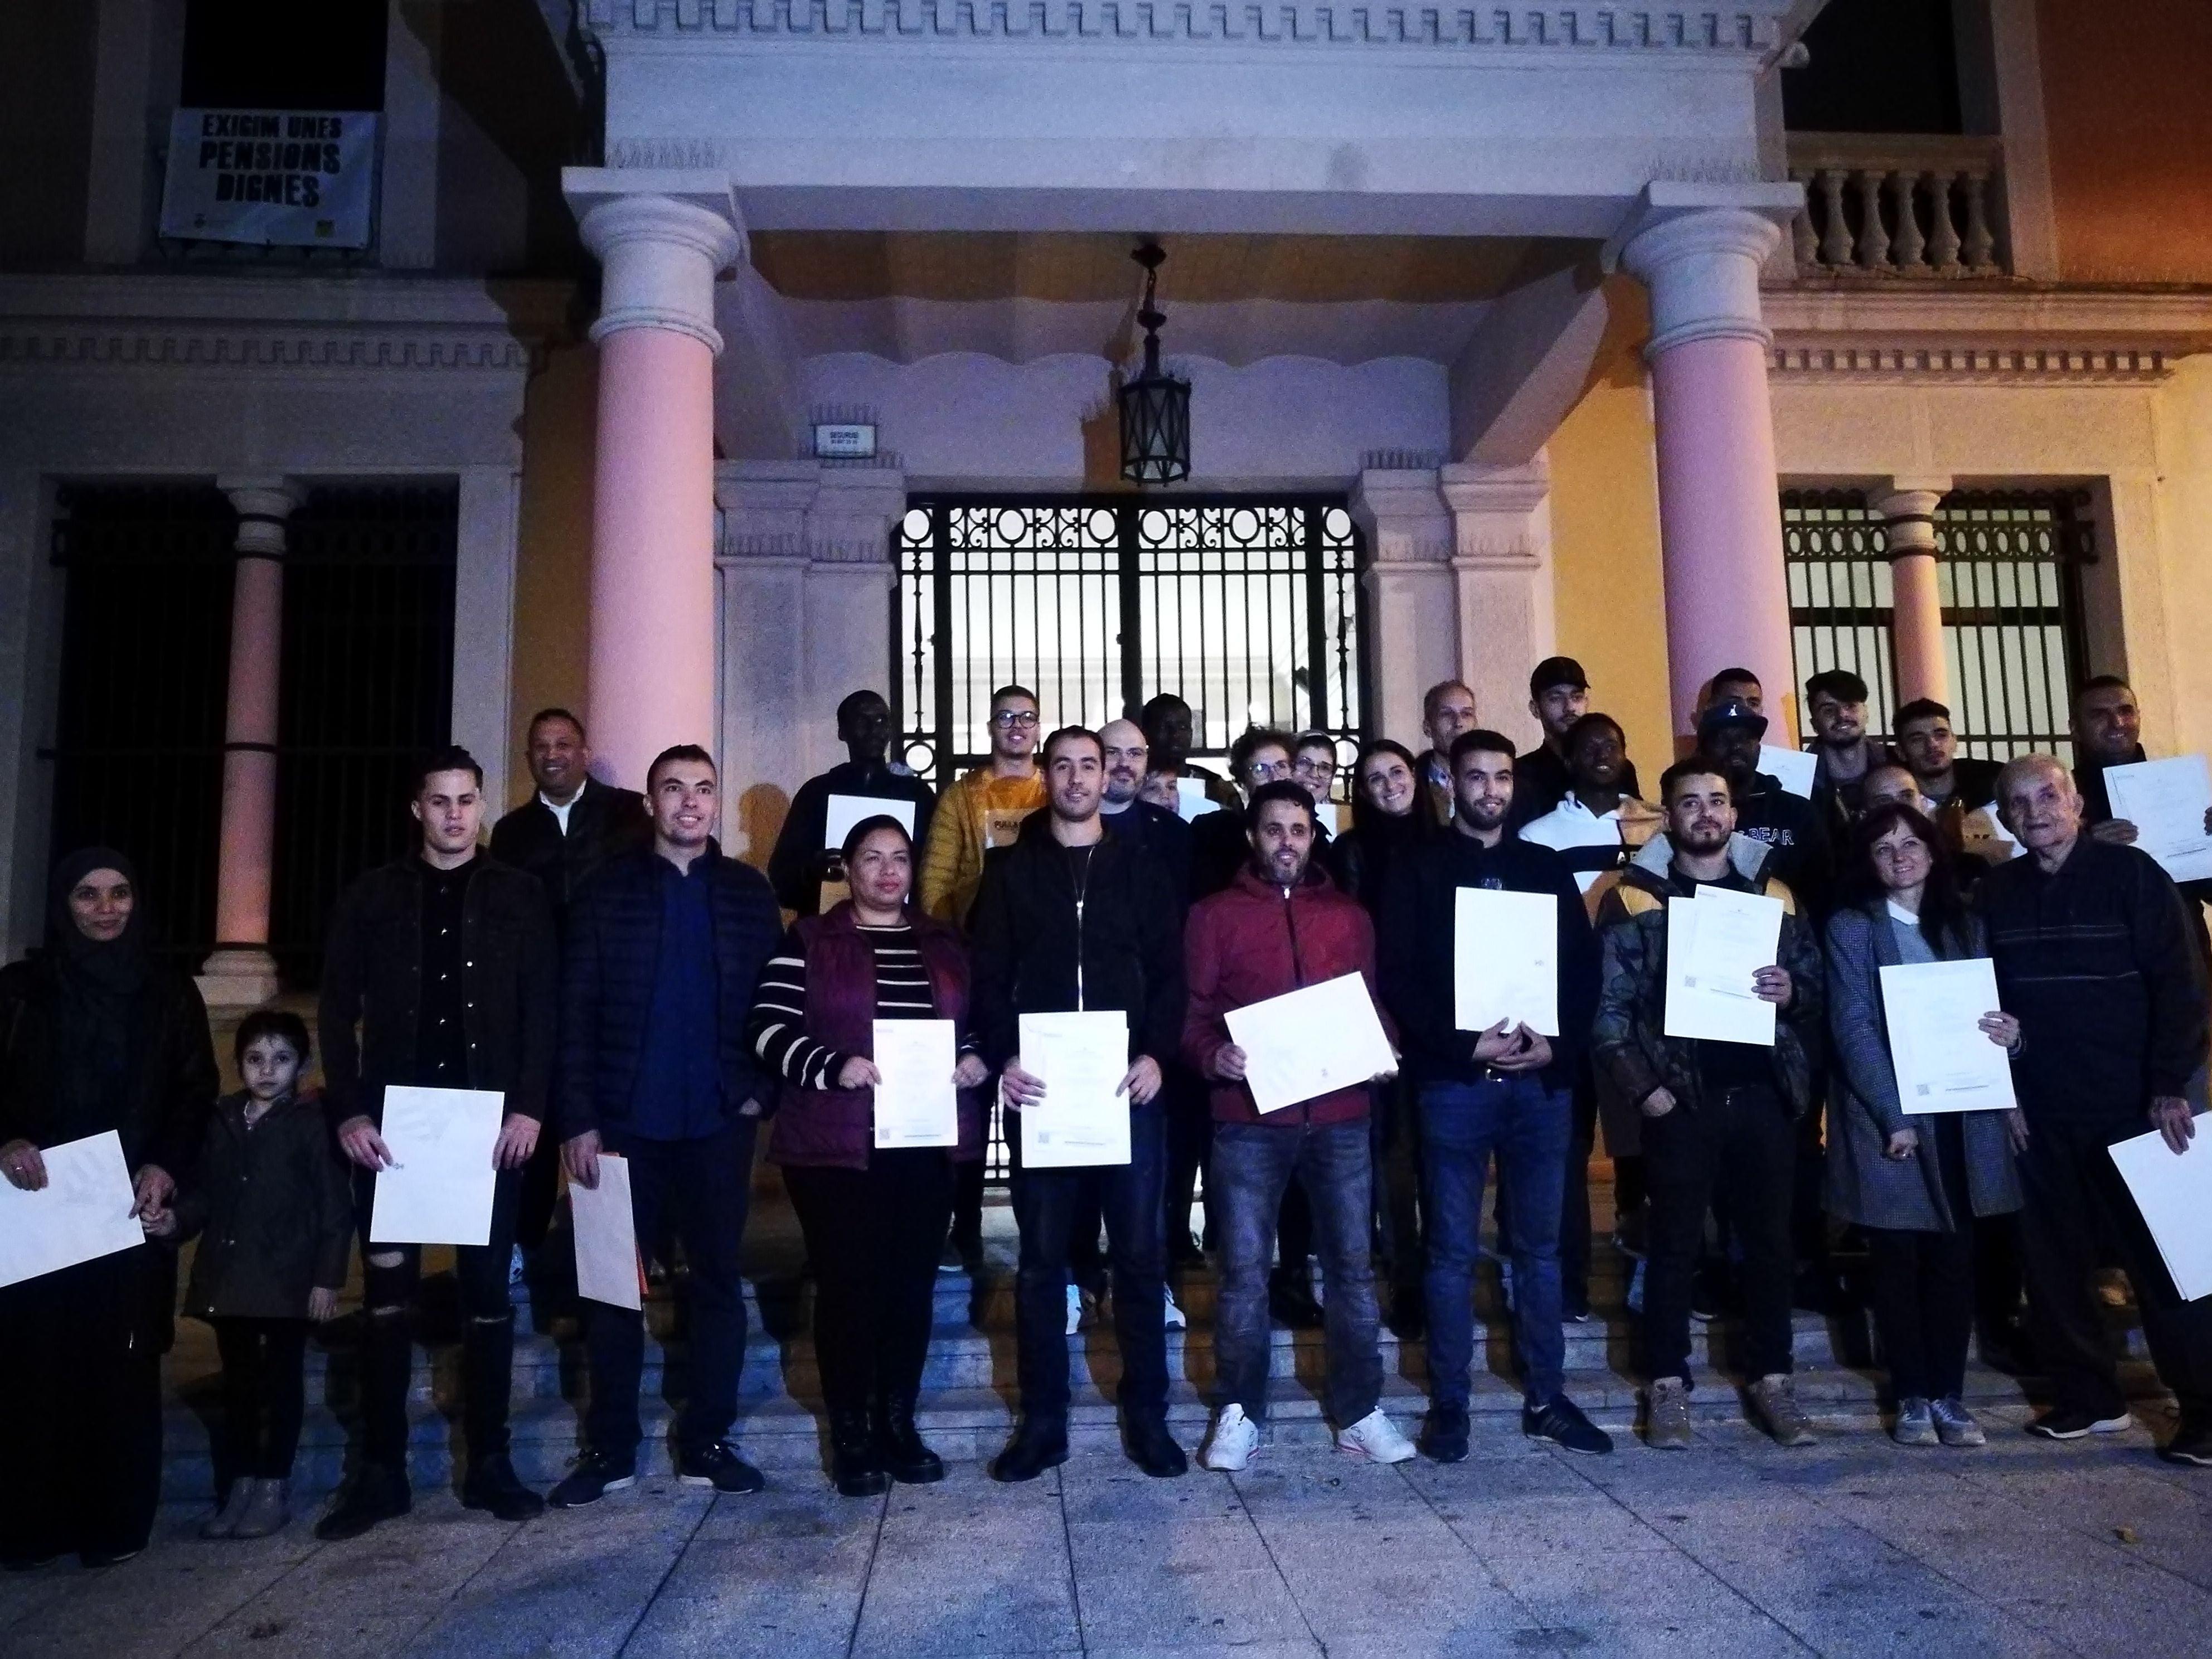 Les 22 persones nouvingudes amb els seus certificats de reconeixement a les portes de l'Ajuntament. FOTO: Redacció